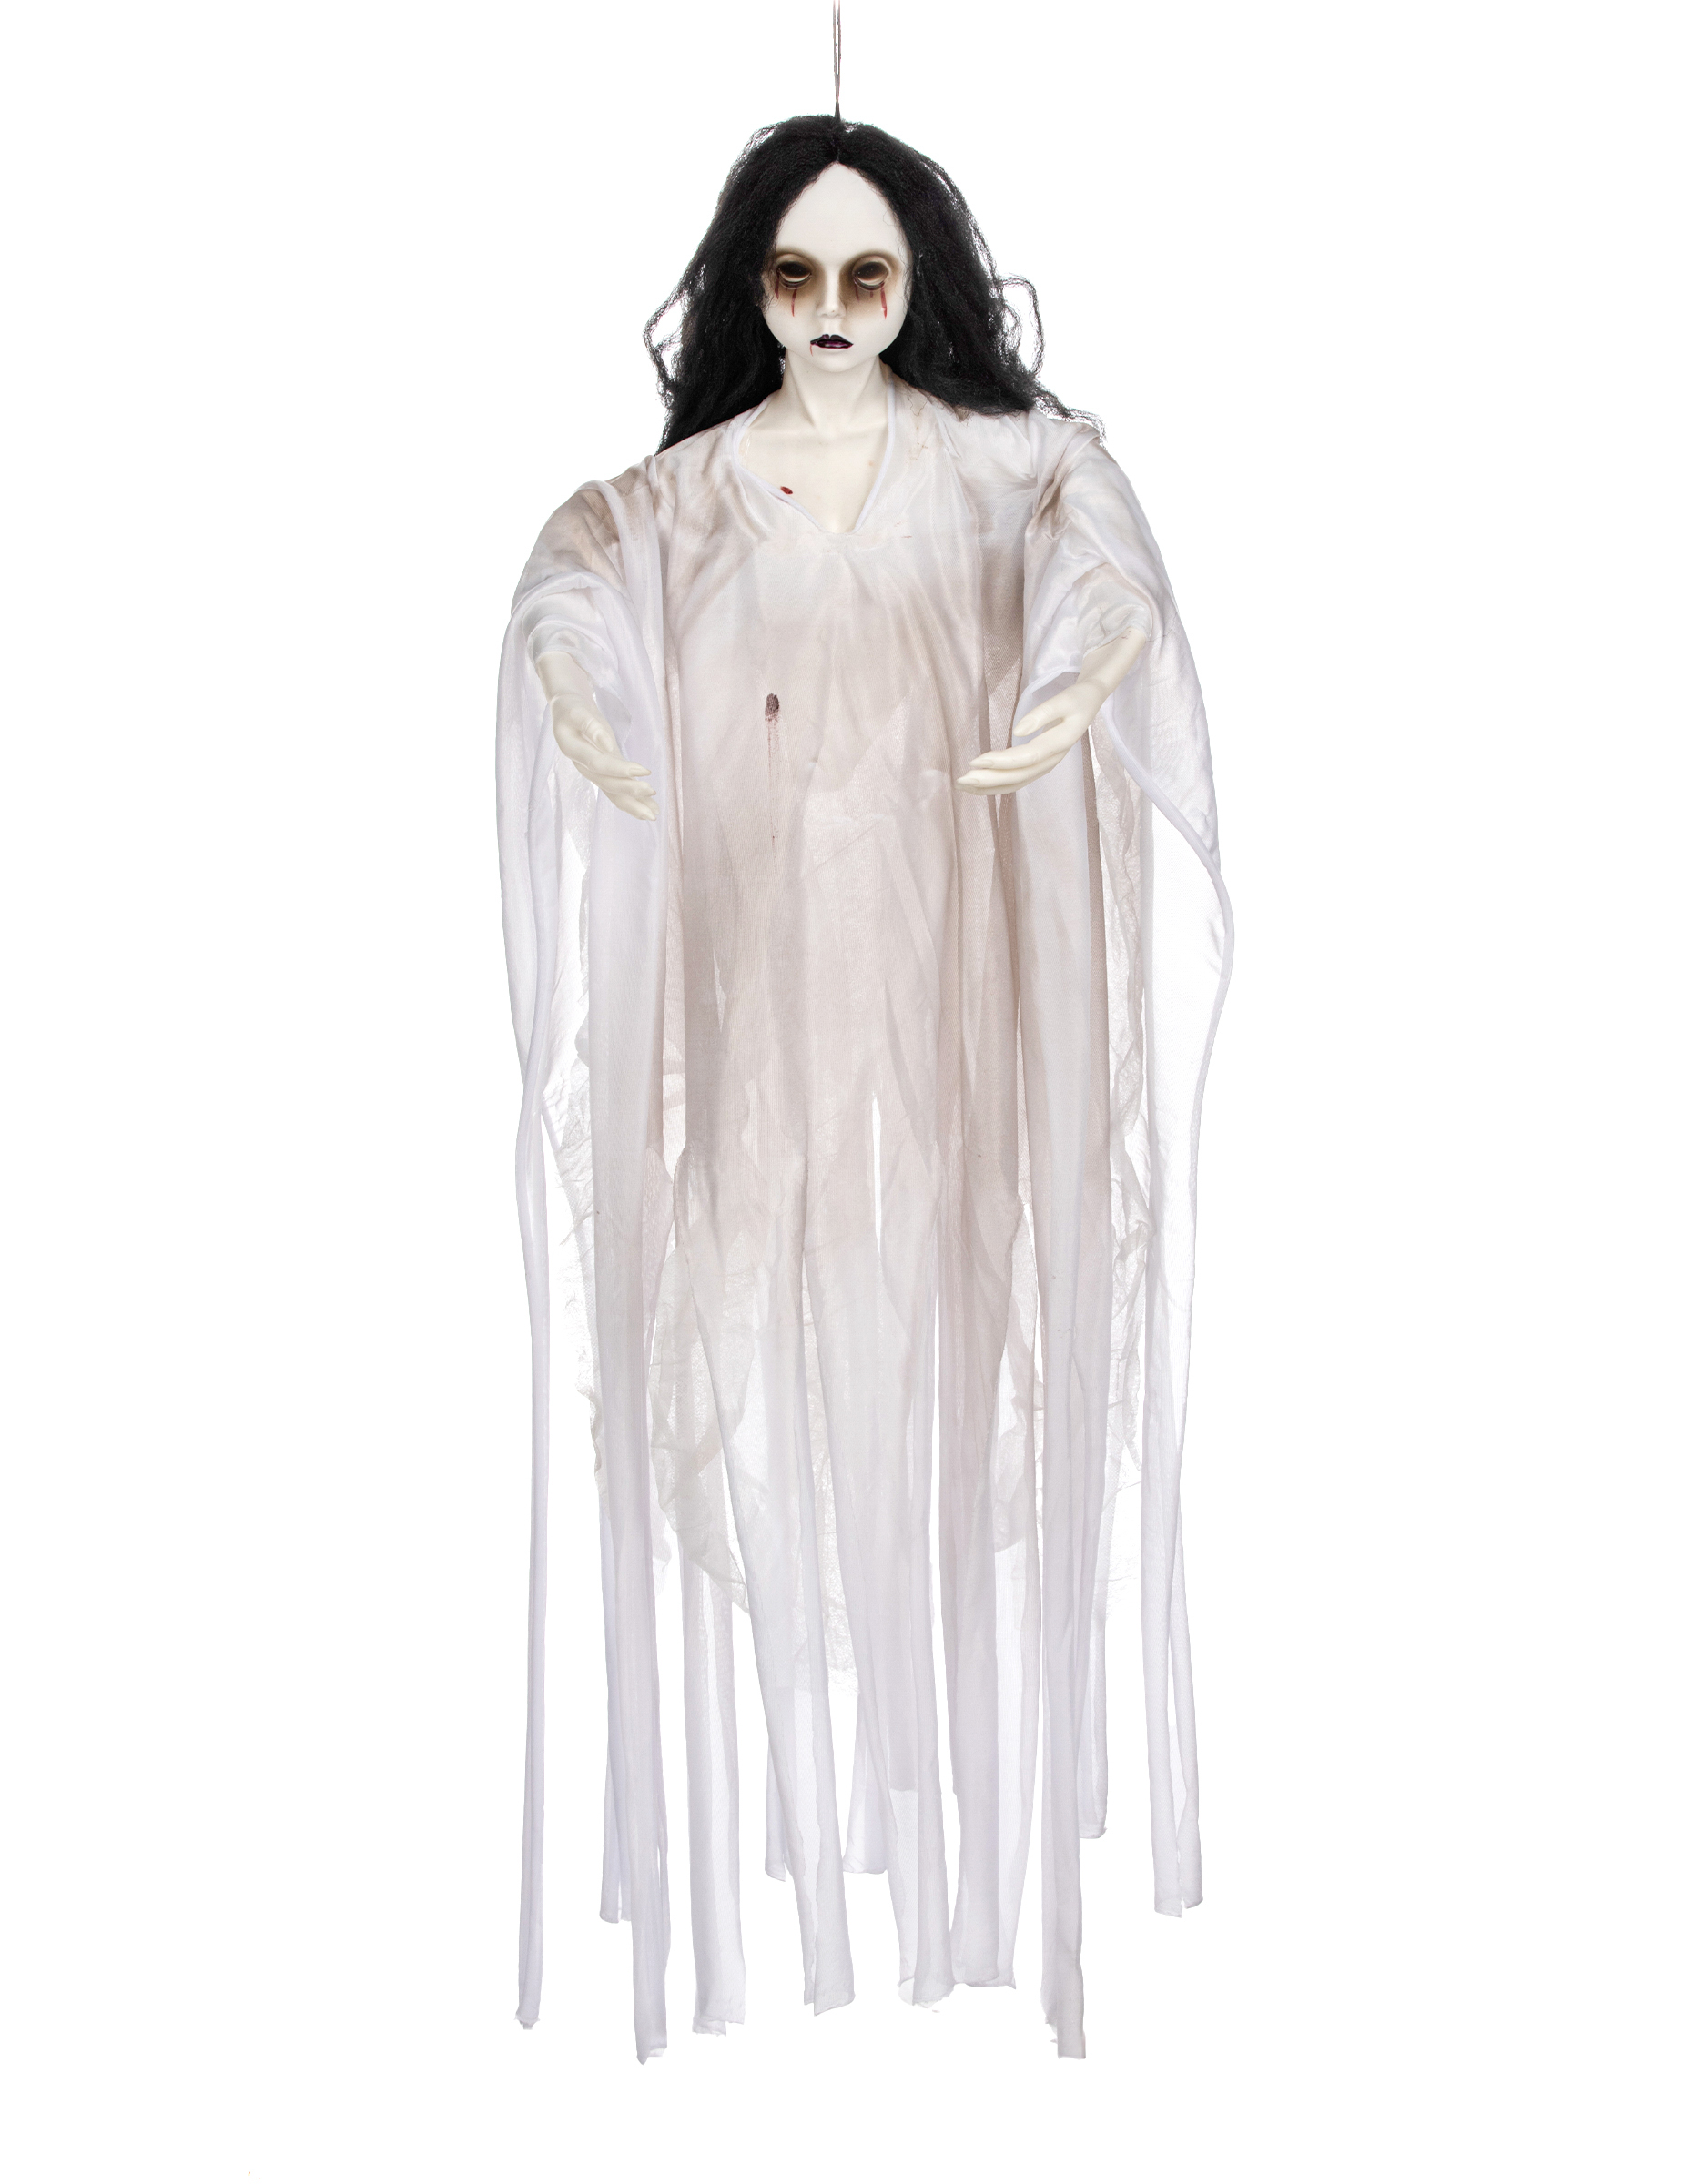 Leuchtende Geister-Braut 90cm Halloweendeko weiß von PARTYPRO